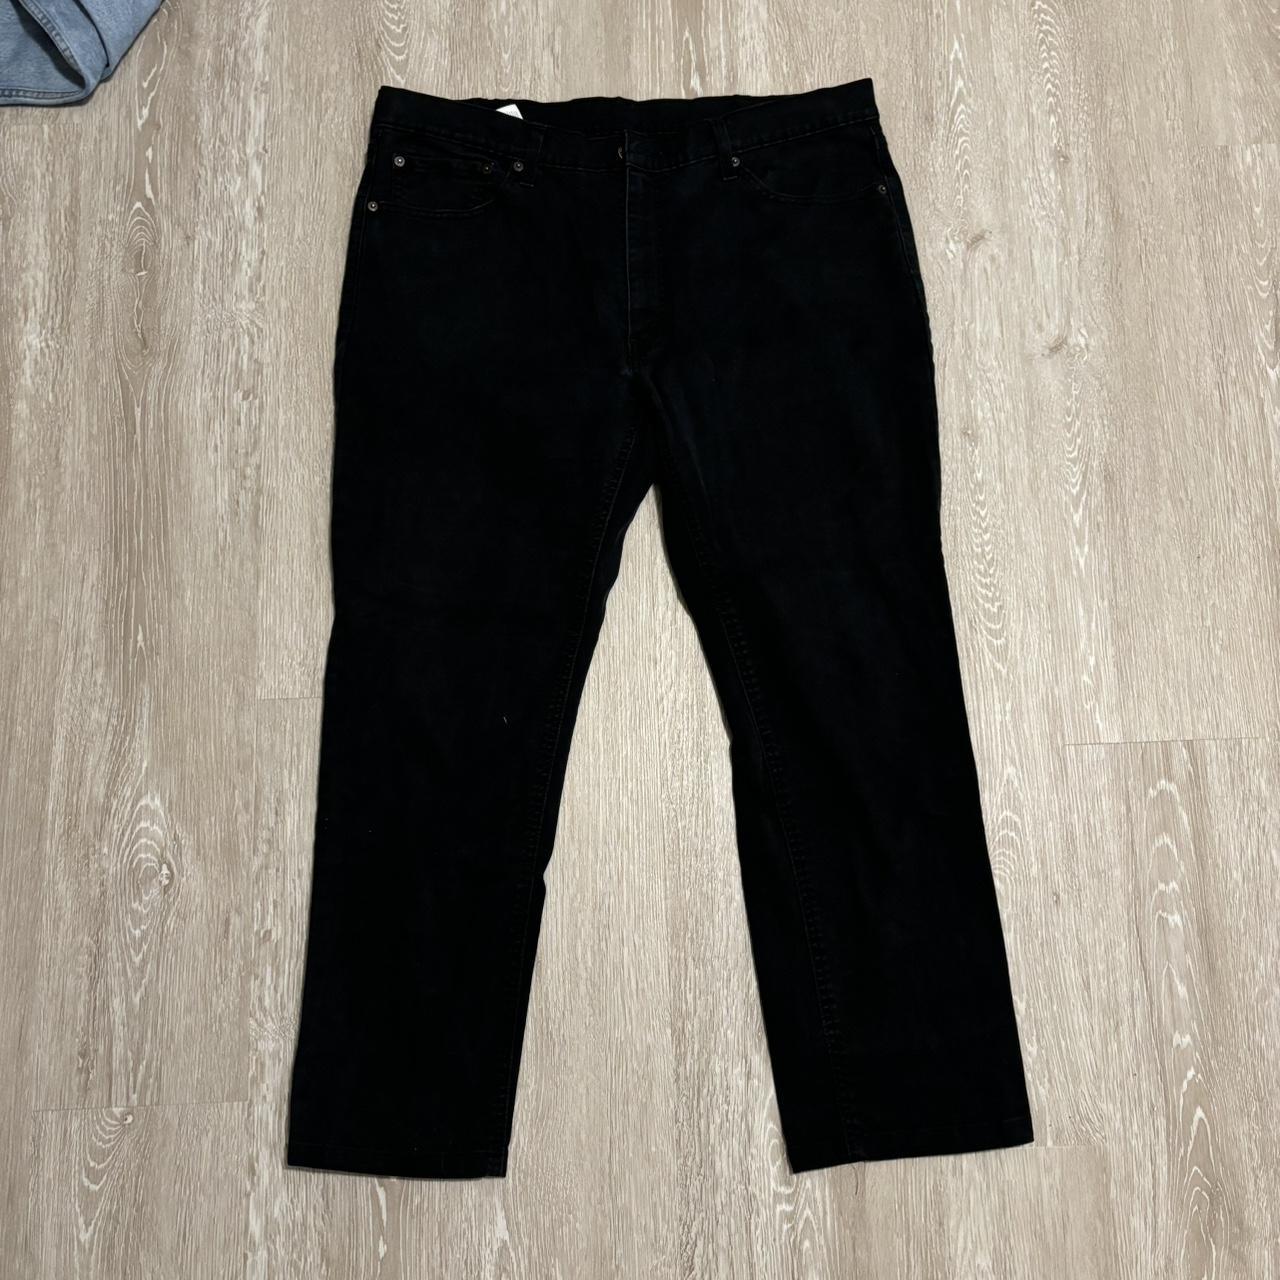 Levi’s 541 Black denim jeans Excellent quality Size:... - Depop